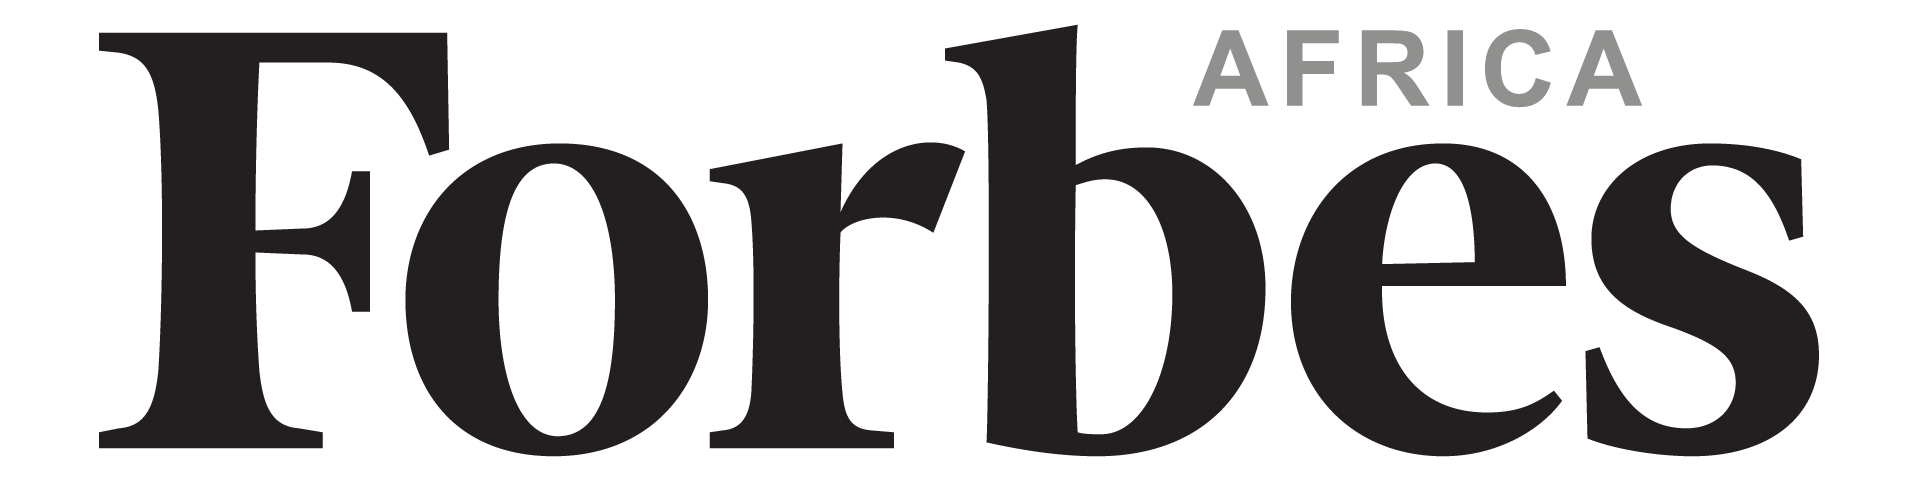 Forbes Châu Phi - Truyền thông - Nhà xuất bản